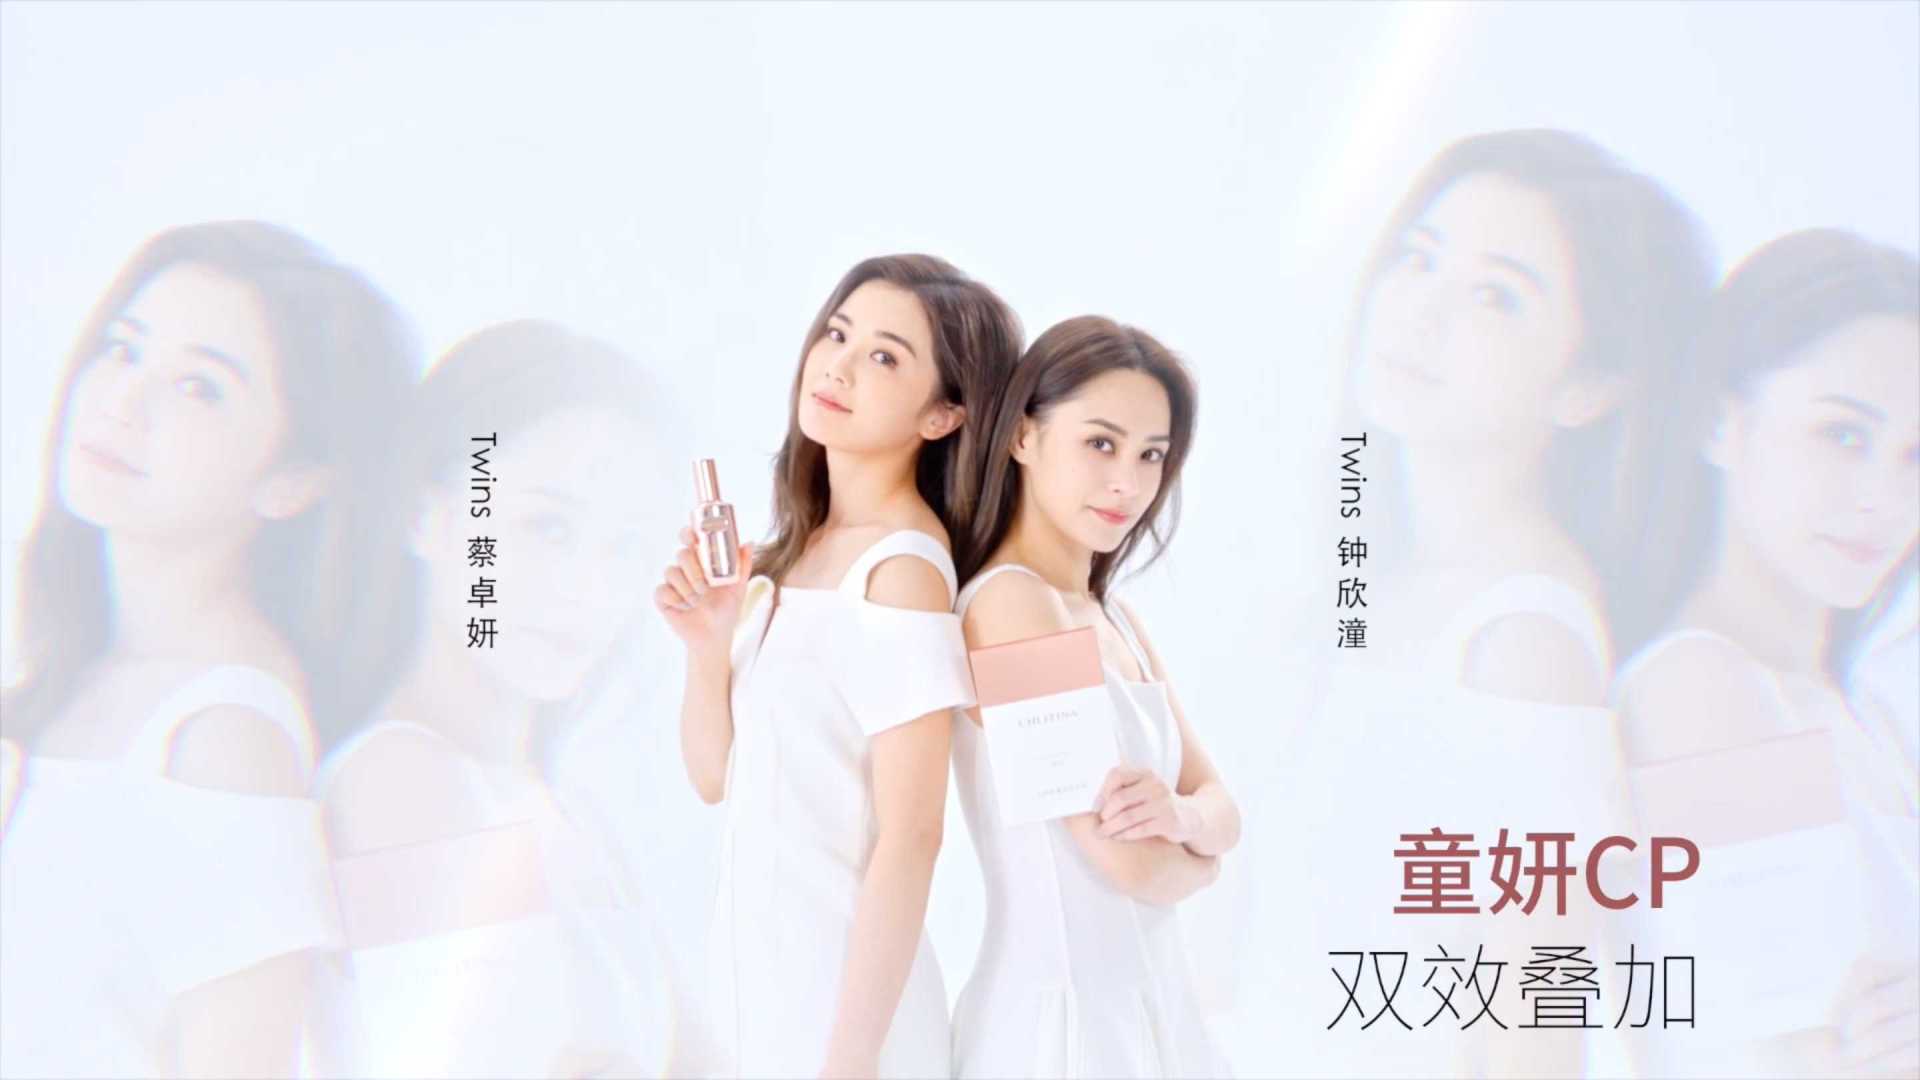 克丽缇娜 x Twins #童妍CP#-广告美妆时尚视频-新片场